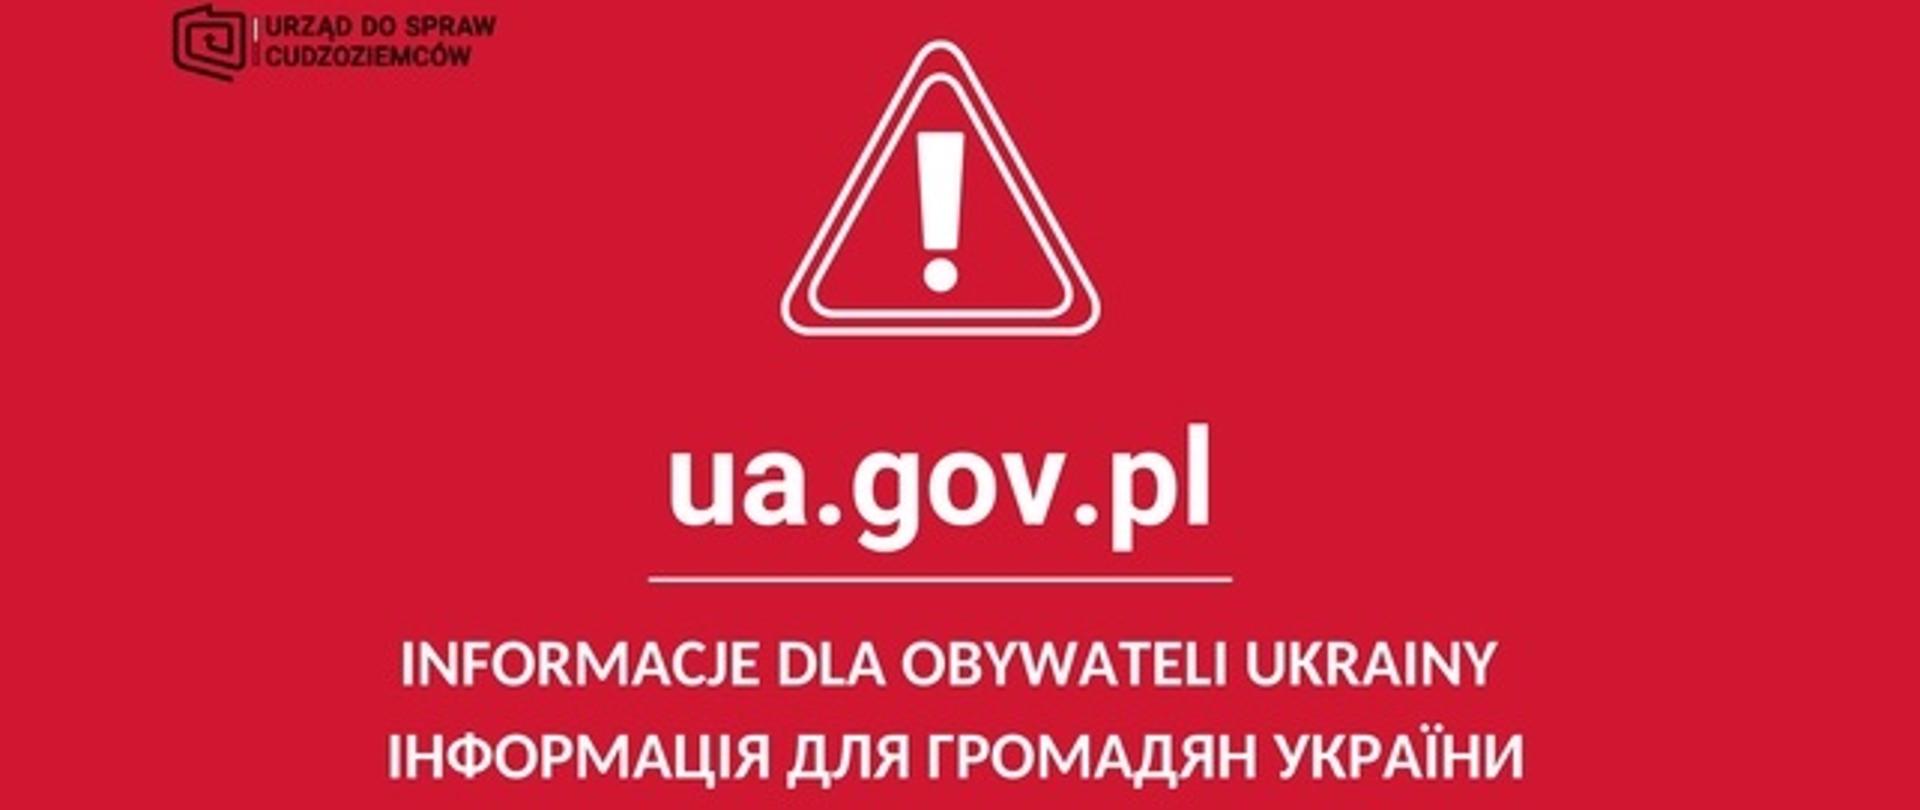 Znak ostrzegawczy na czerwonym tle i napis w dwóch językach "Informacja dla obywateli Ukrainy"